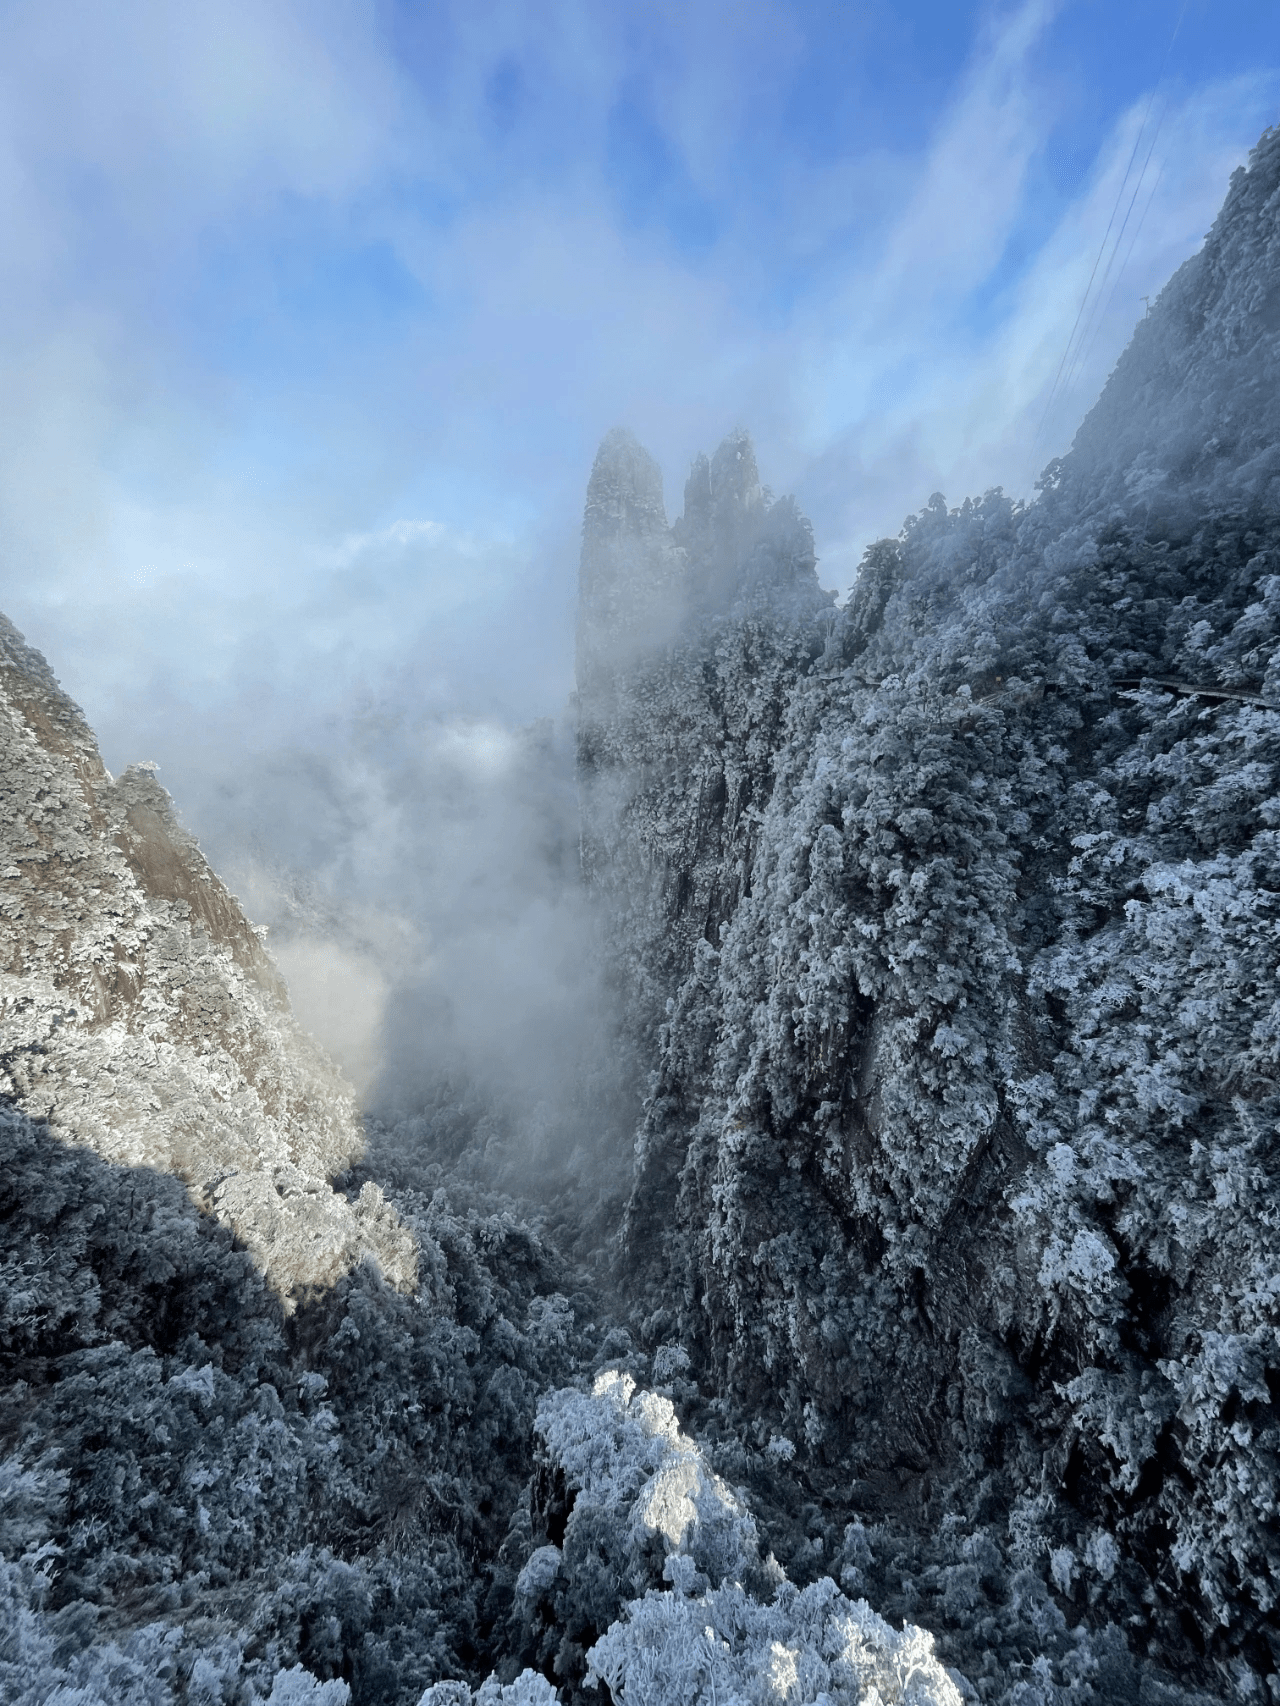 在最冷的冬日，邂逅最美的雾凇，2021莽山五指峰等你来玩